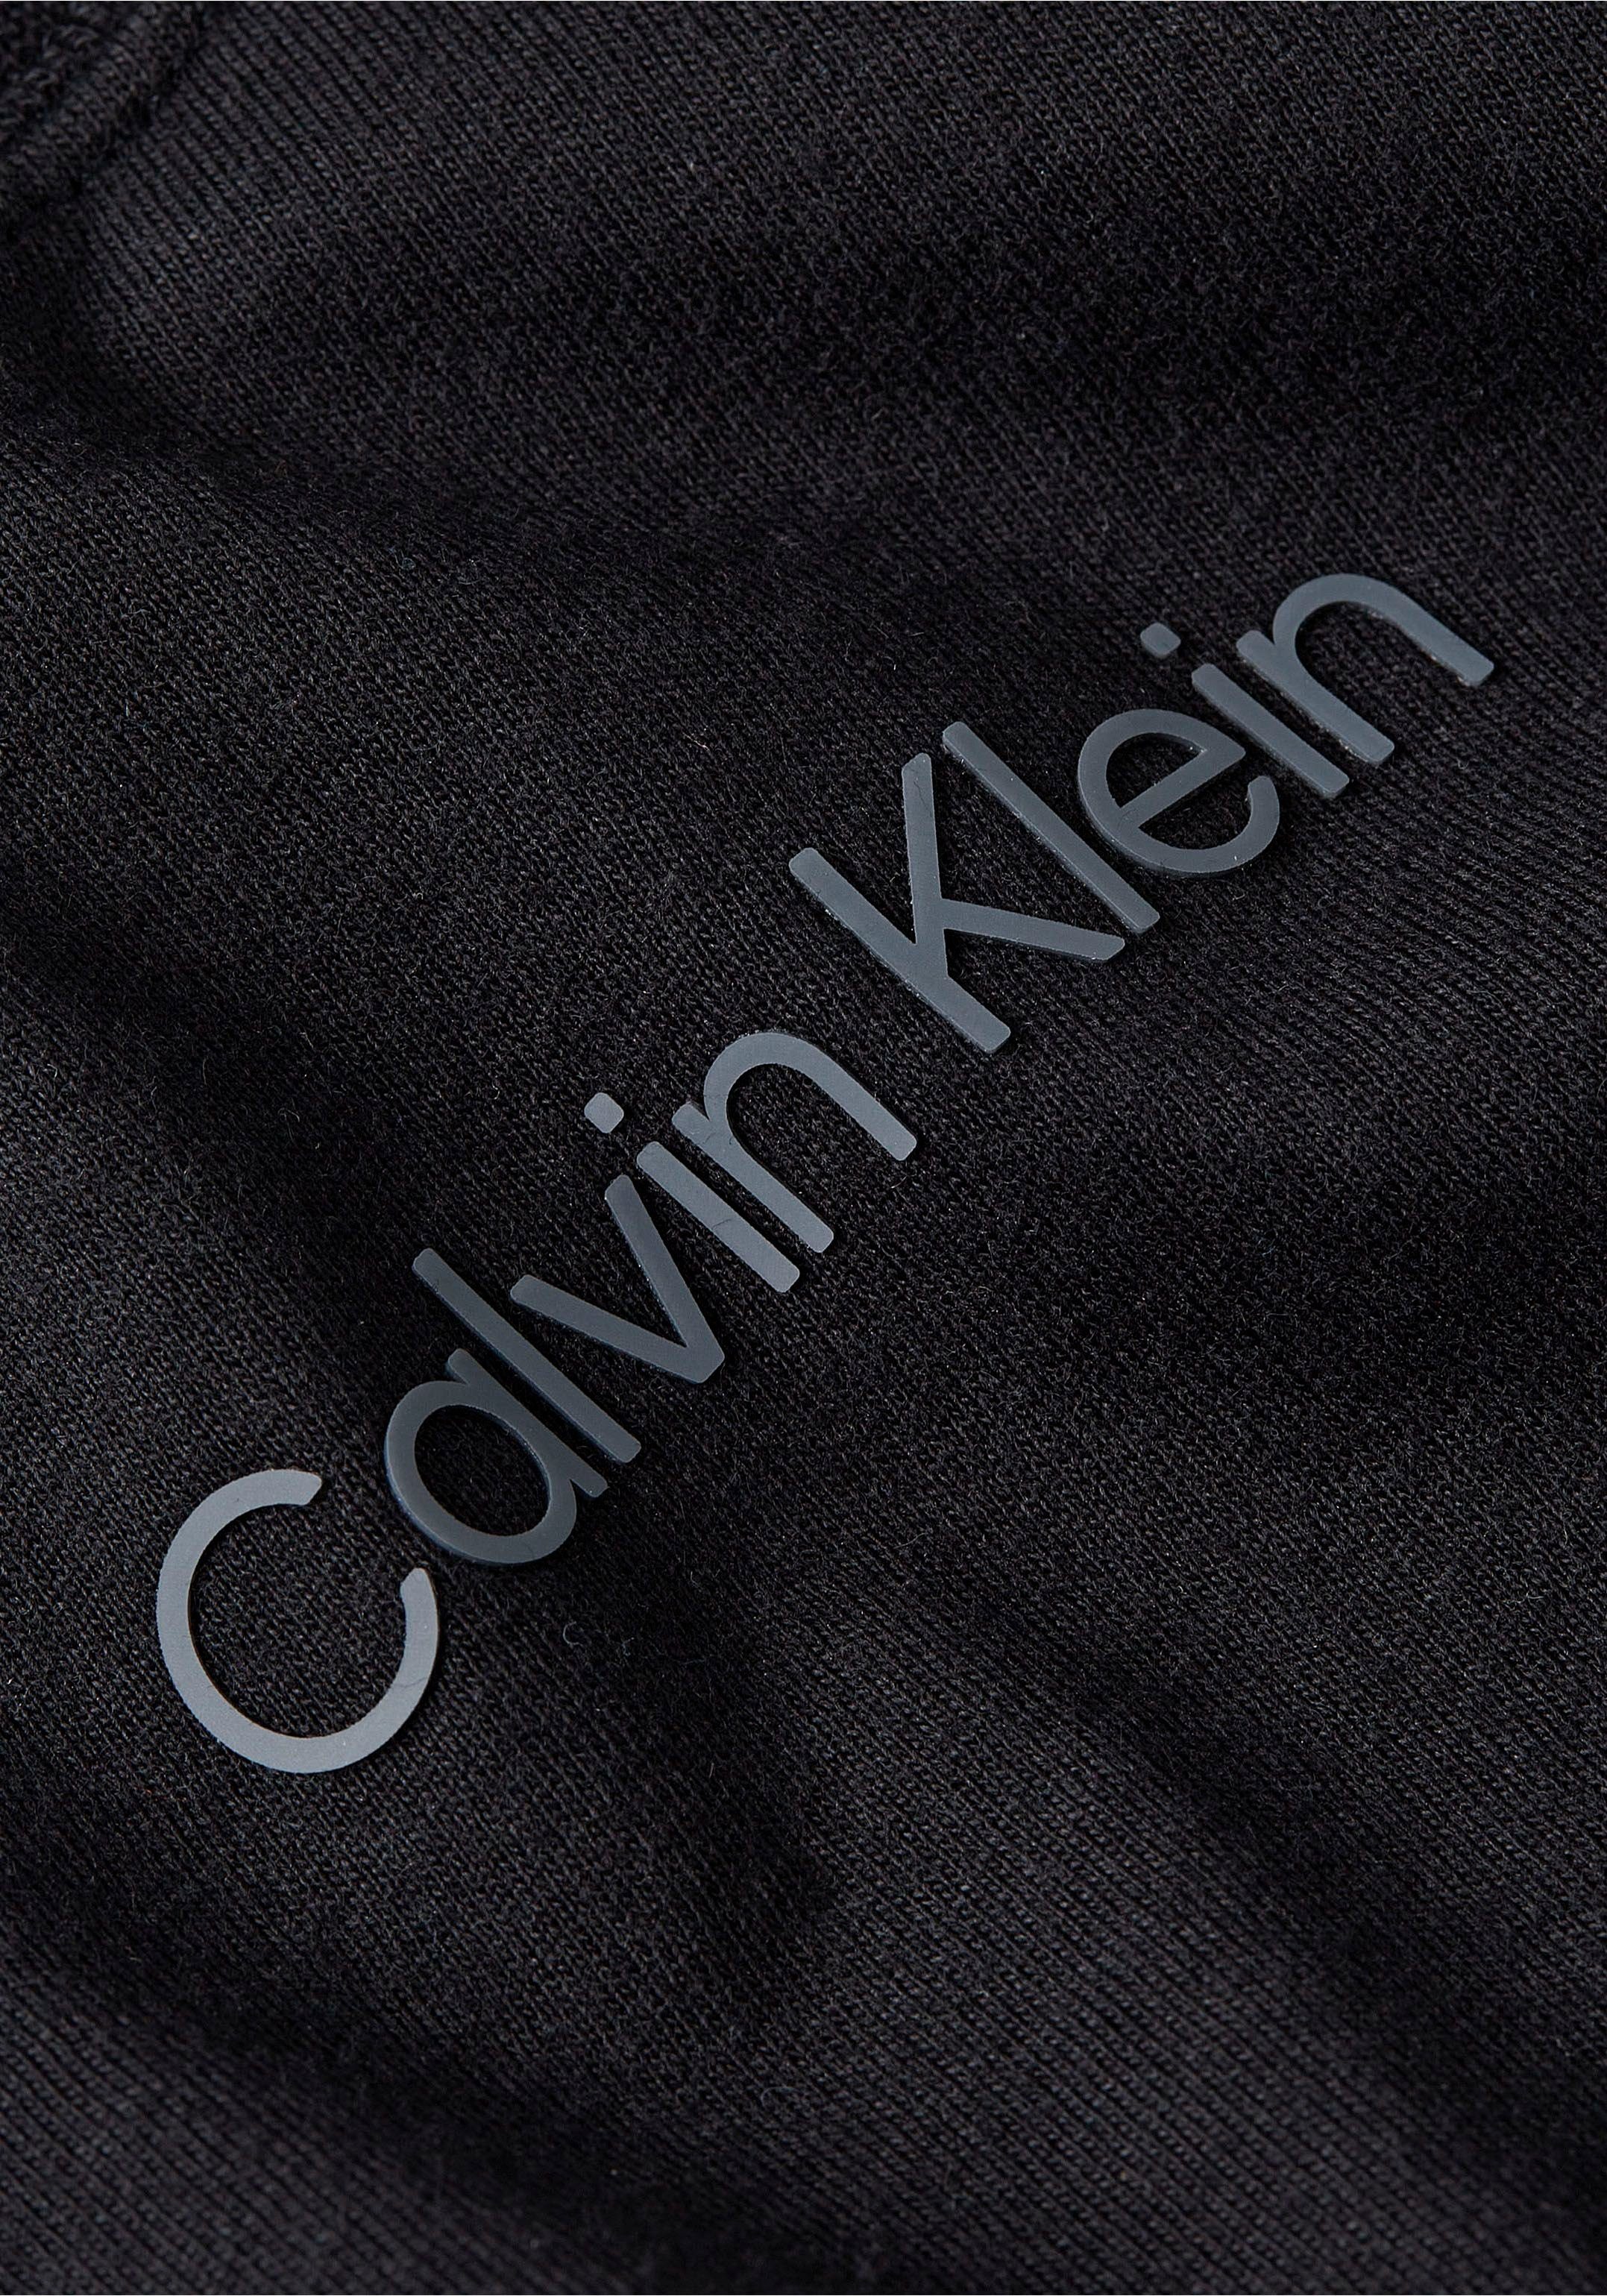 Klein schwarz Calvin Sport T-Shirt